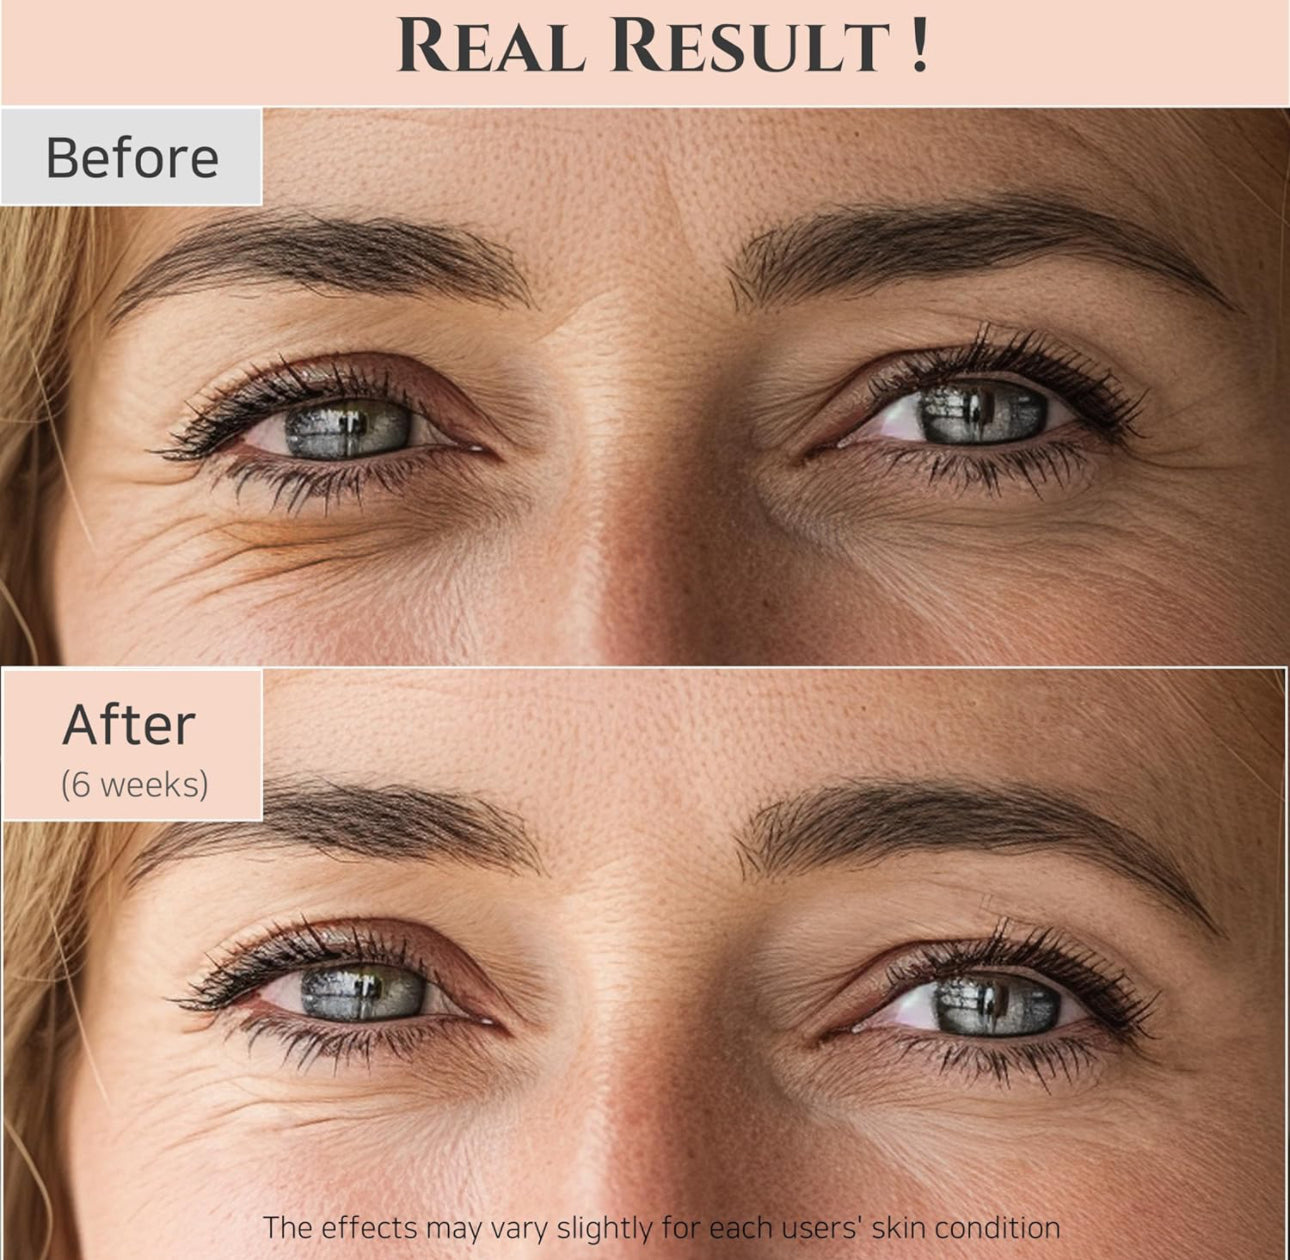 Revive Eye Serum : Ginseng + Retinal